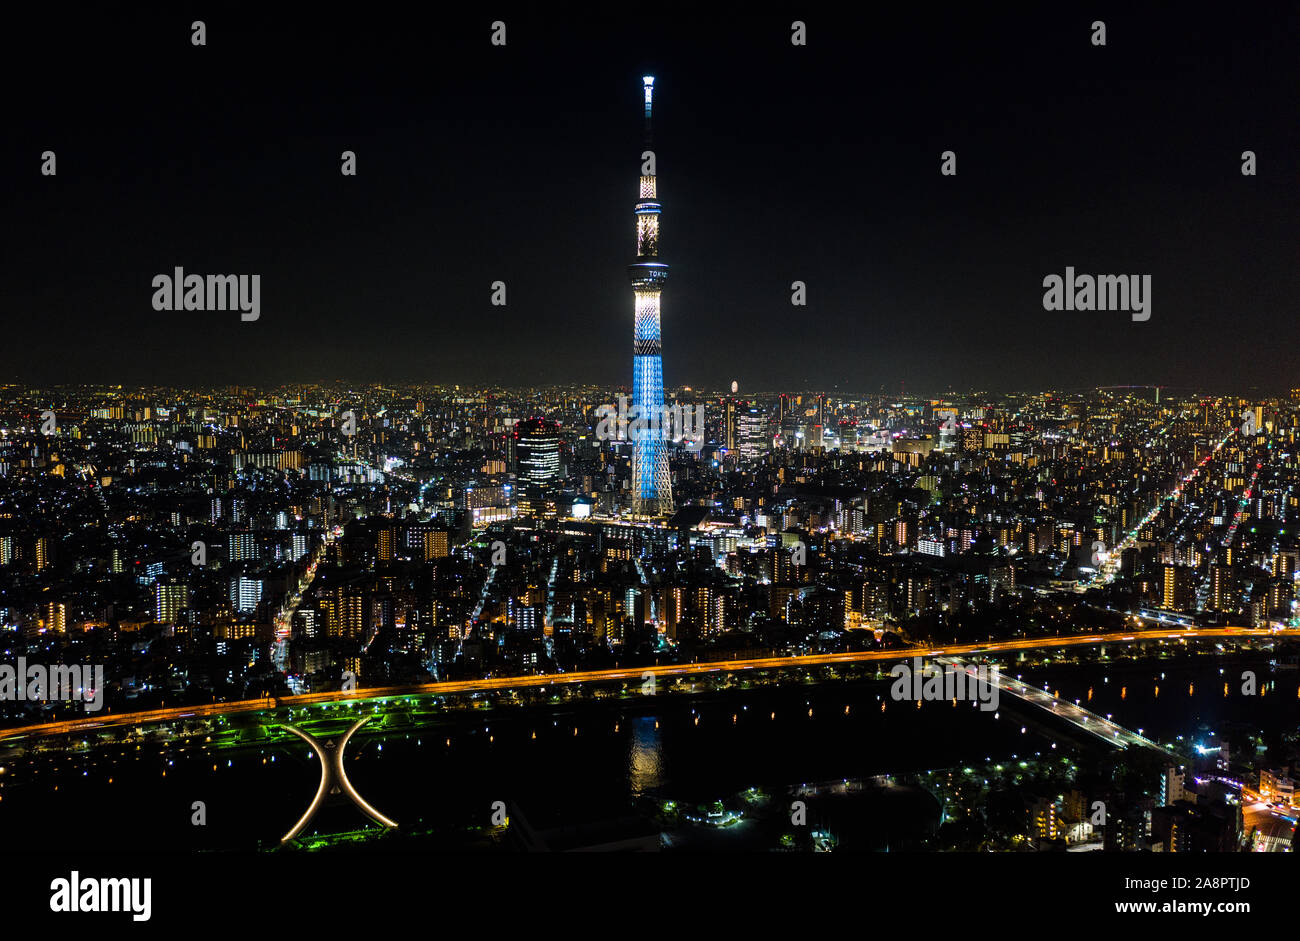 Vue aérienne de la rivière Sumida, Tokyo Skytree, et paysage japonais à Tokyo ville la nuit. Le Japon, paysage urbain Tourisme monument, Asia travel destination Banque D'Images